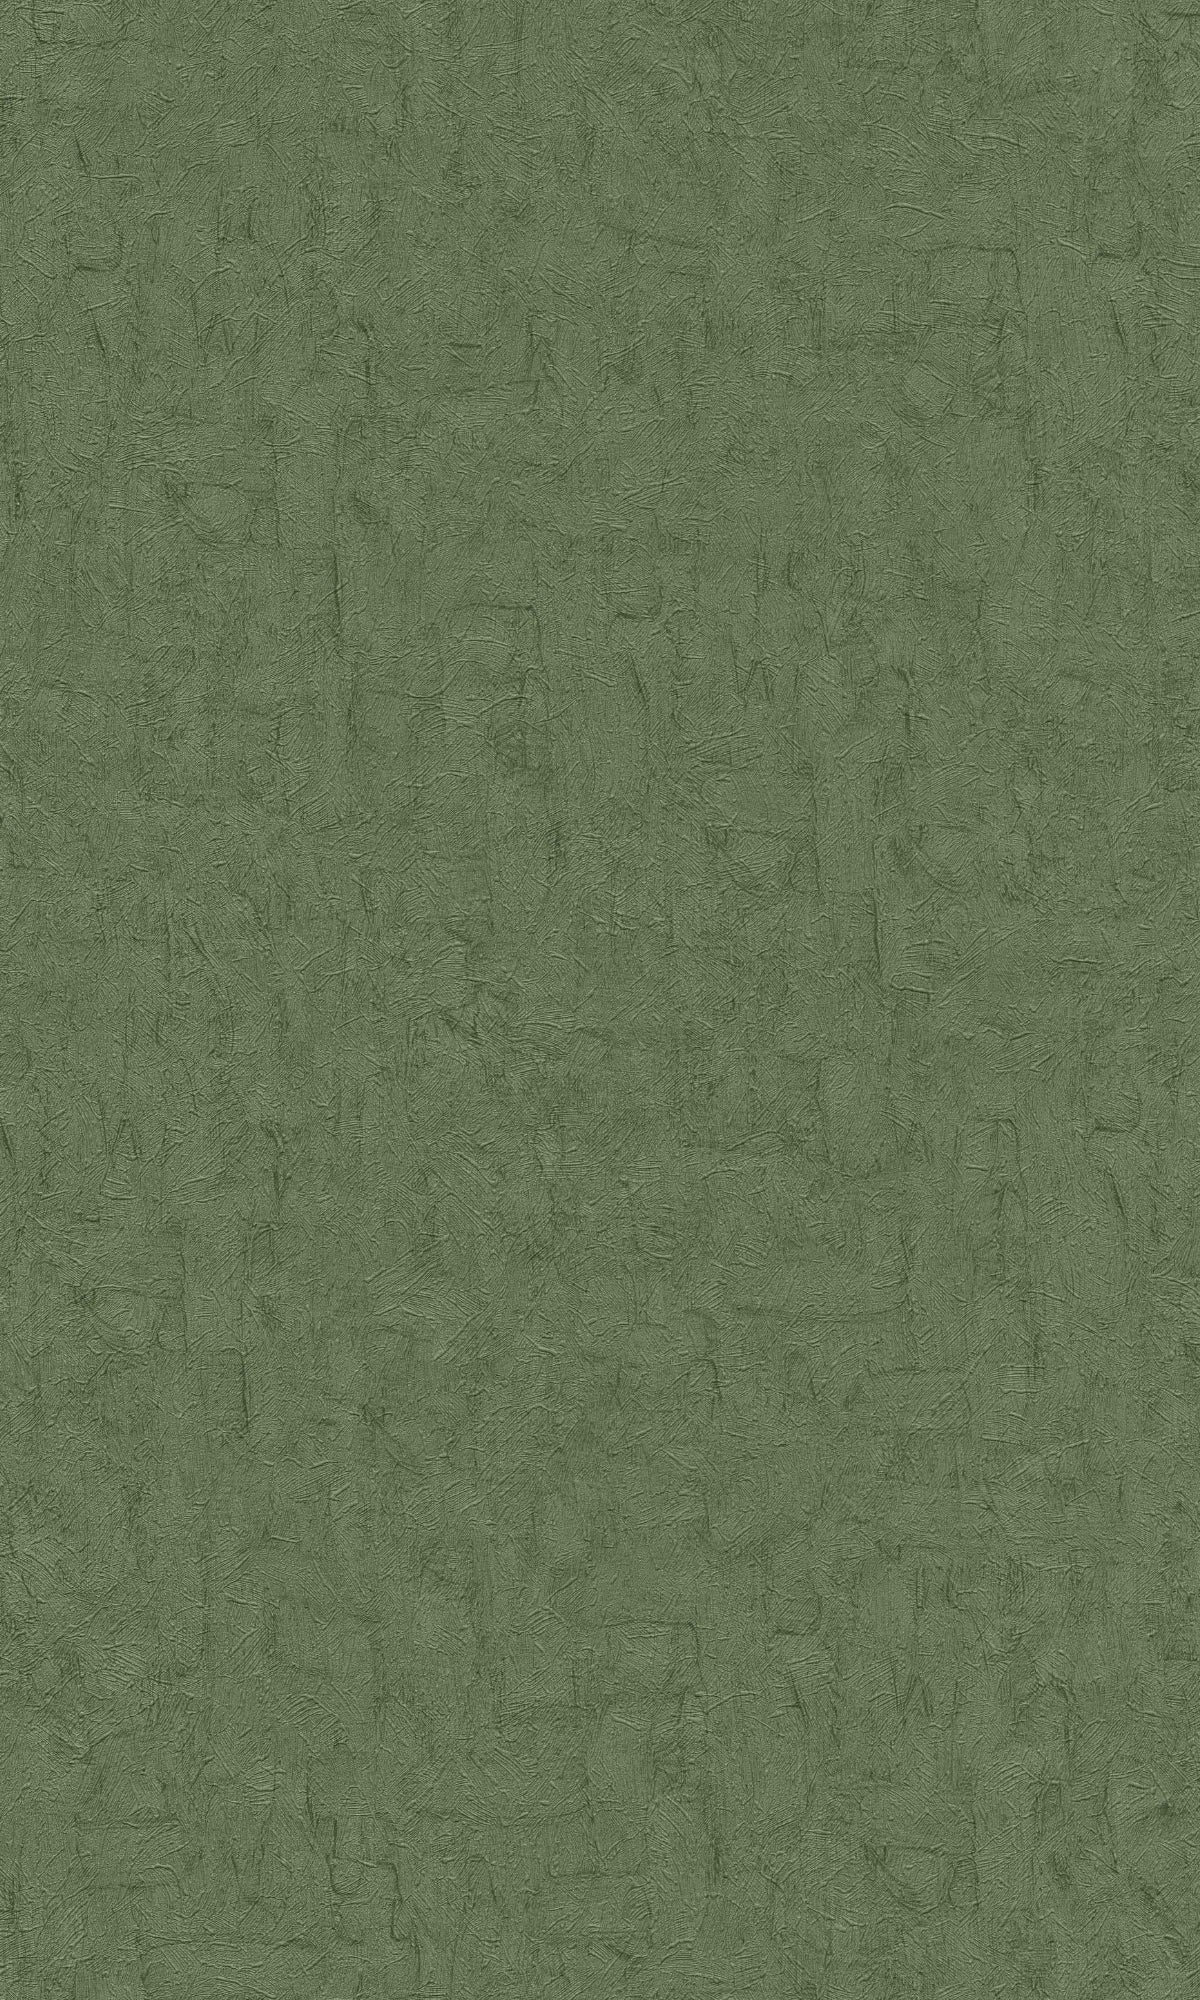 Moss Green Plain Textured Wallpaper R8462